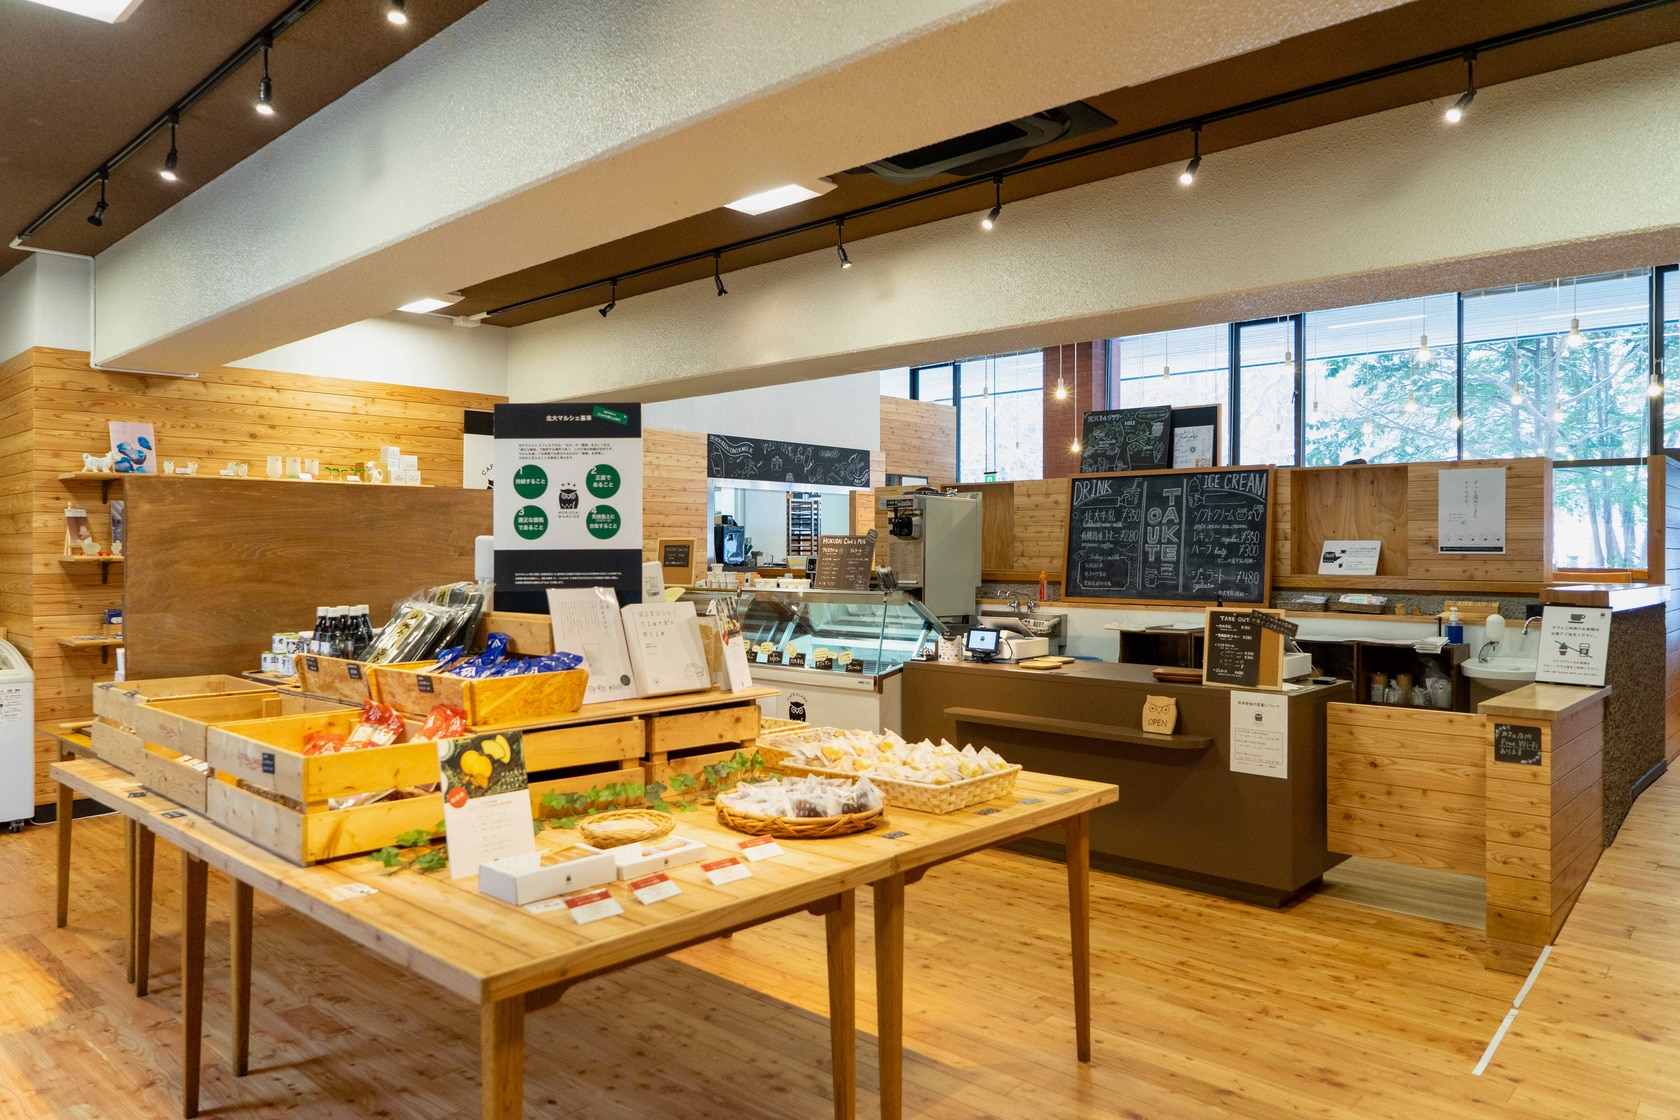 北海道大学構内にある「北大マルシェ Cafe & Labo」の店内,学生だけでなく市民や観光客も訪れる北大マルシェ